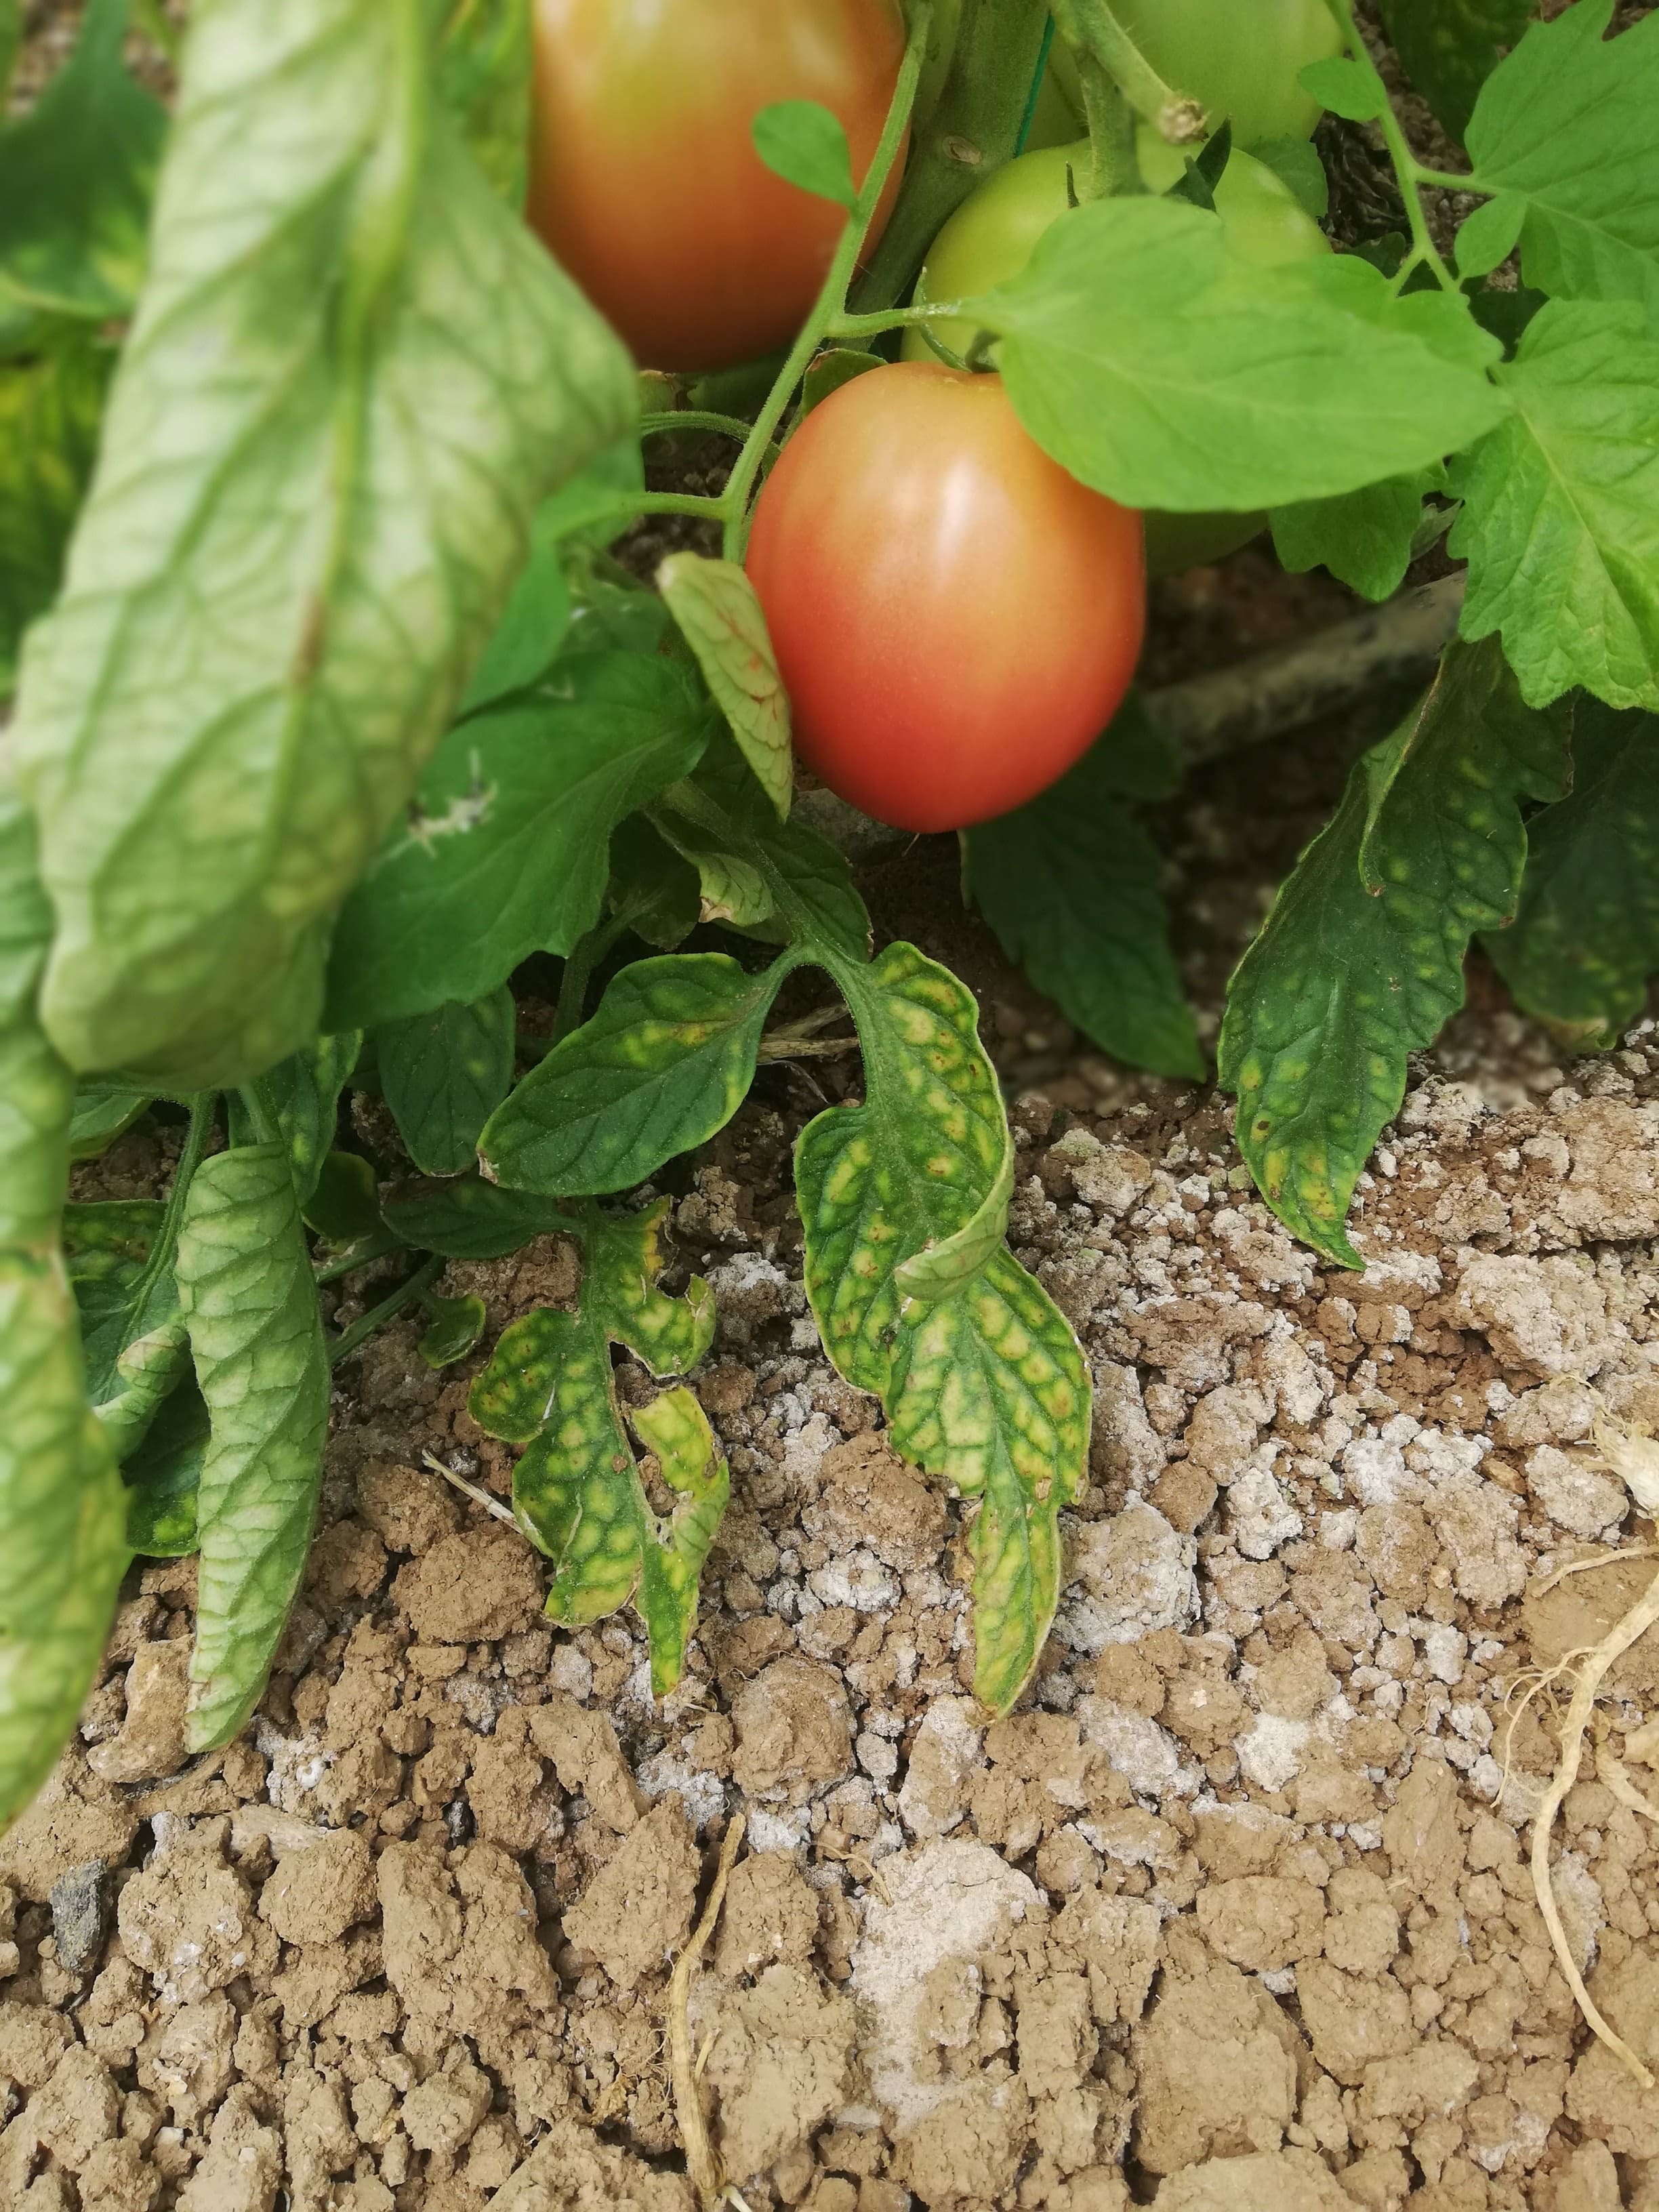 tomatoe magnesium deficiency